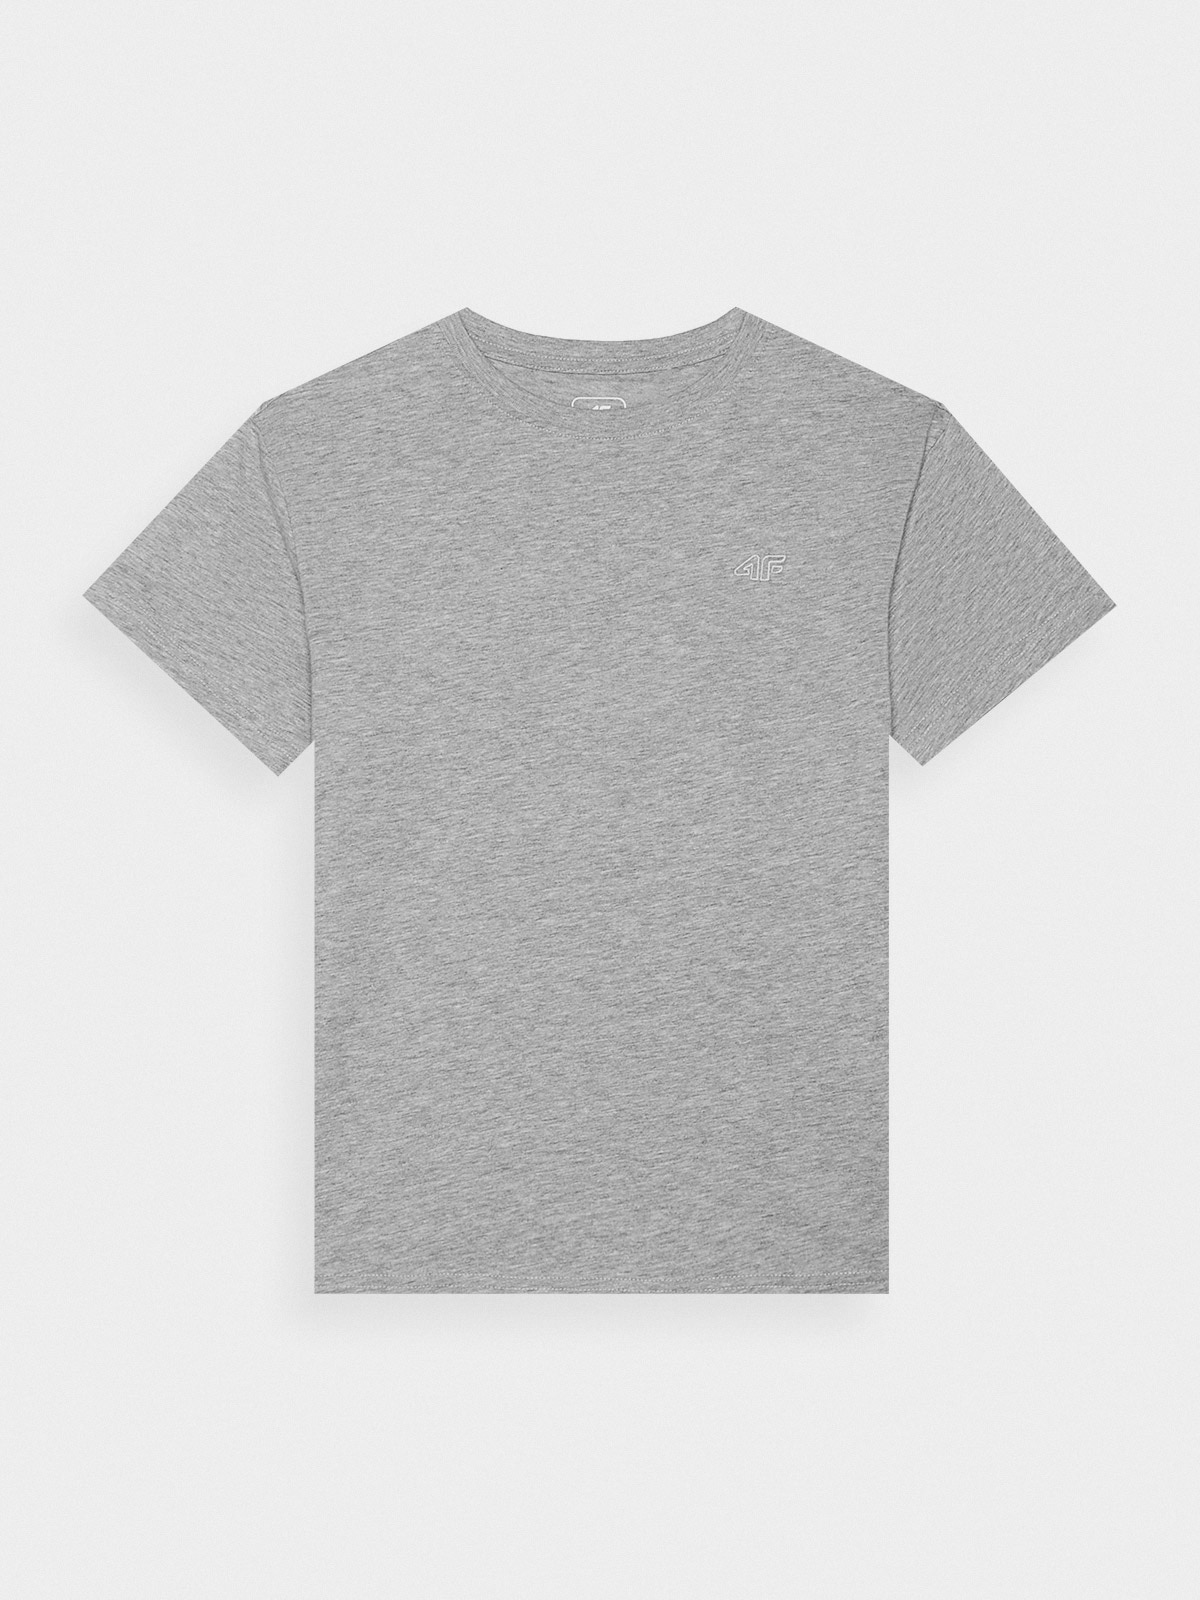 Dívčí hladké tričko - šedé